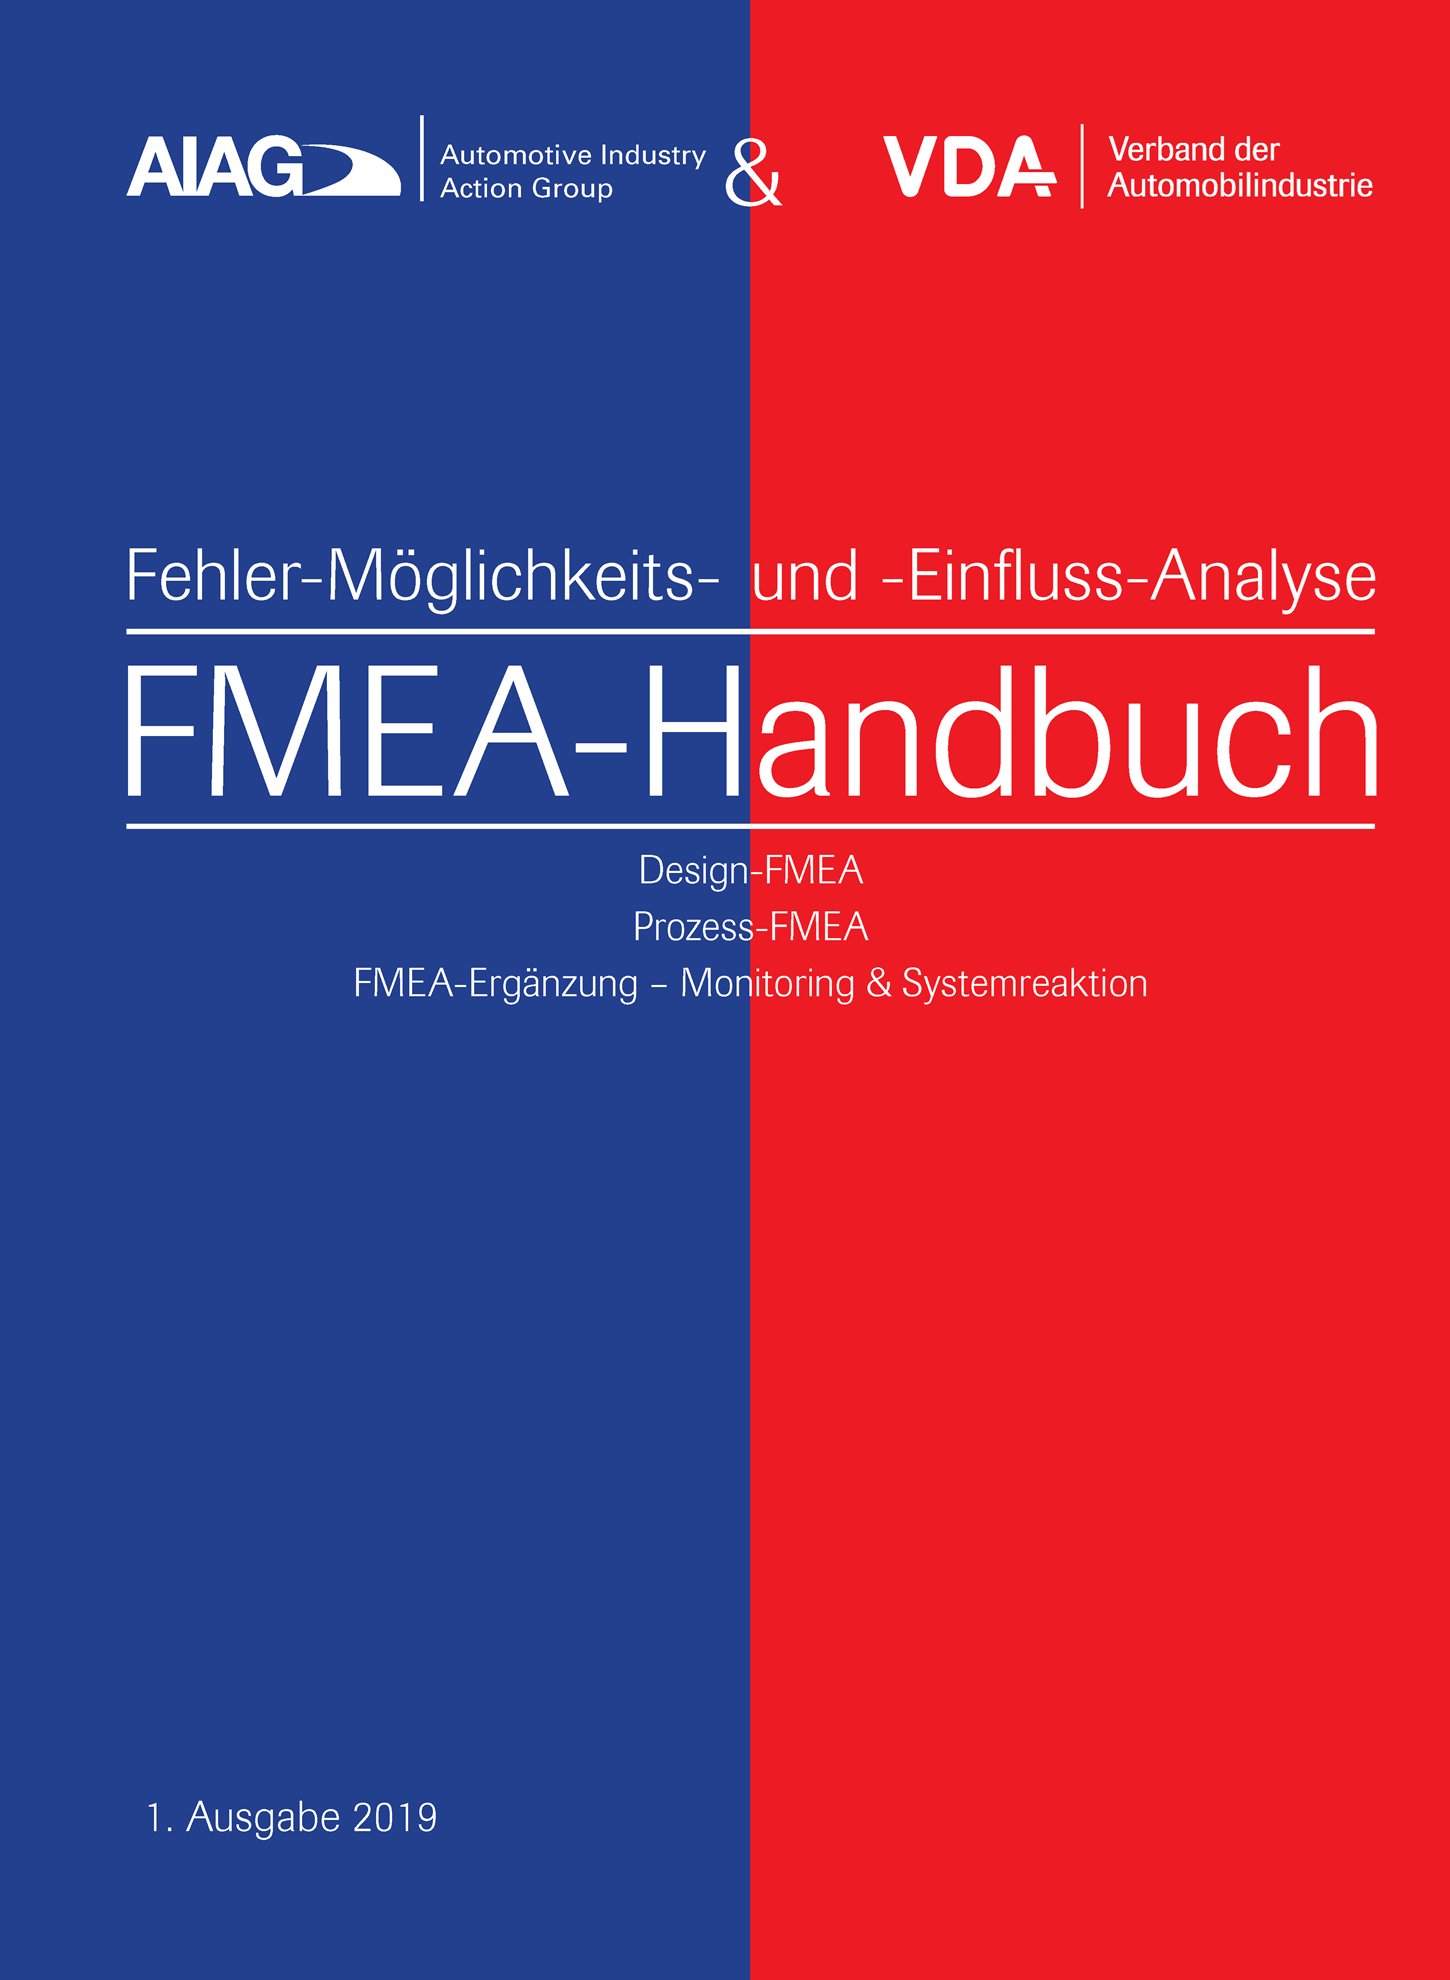 Publikácie  VDA AIAG & VDA FMEA-Handbuch
 Design-FMEA, Prozess-FMEA, 
 FMEA-Ergänzung - Monitoring & Systemreaktion
 1. Ausgabe 2019 1.1.2019 náhľad